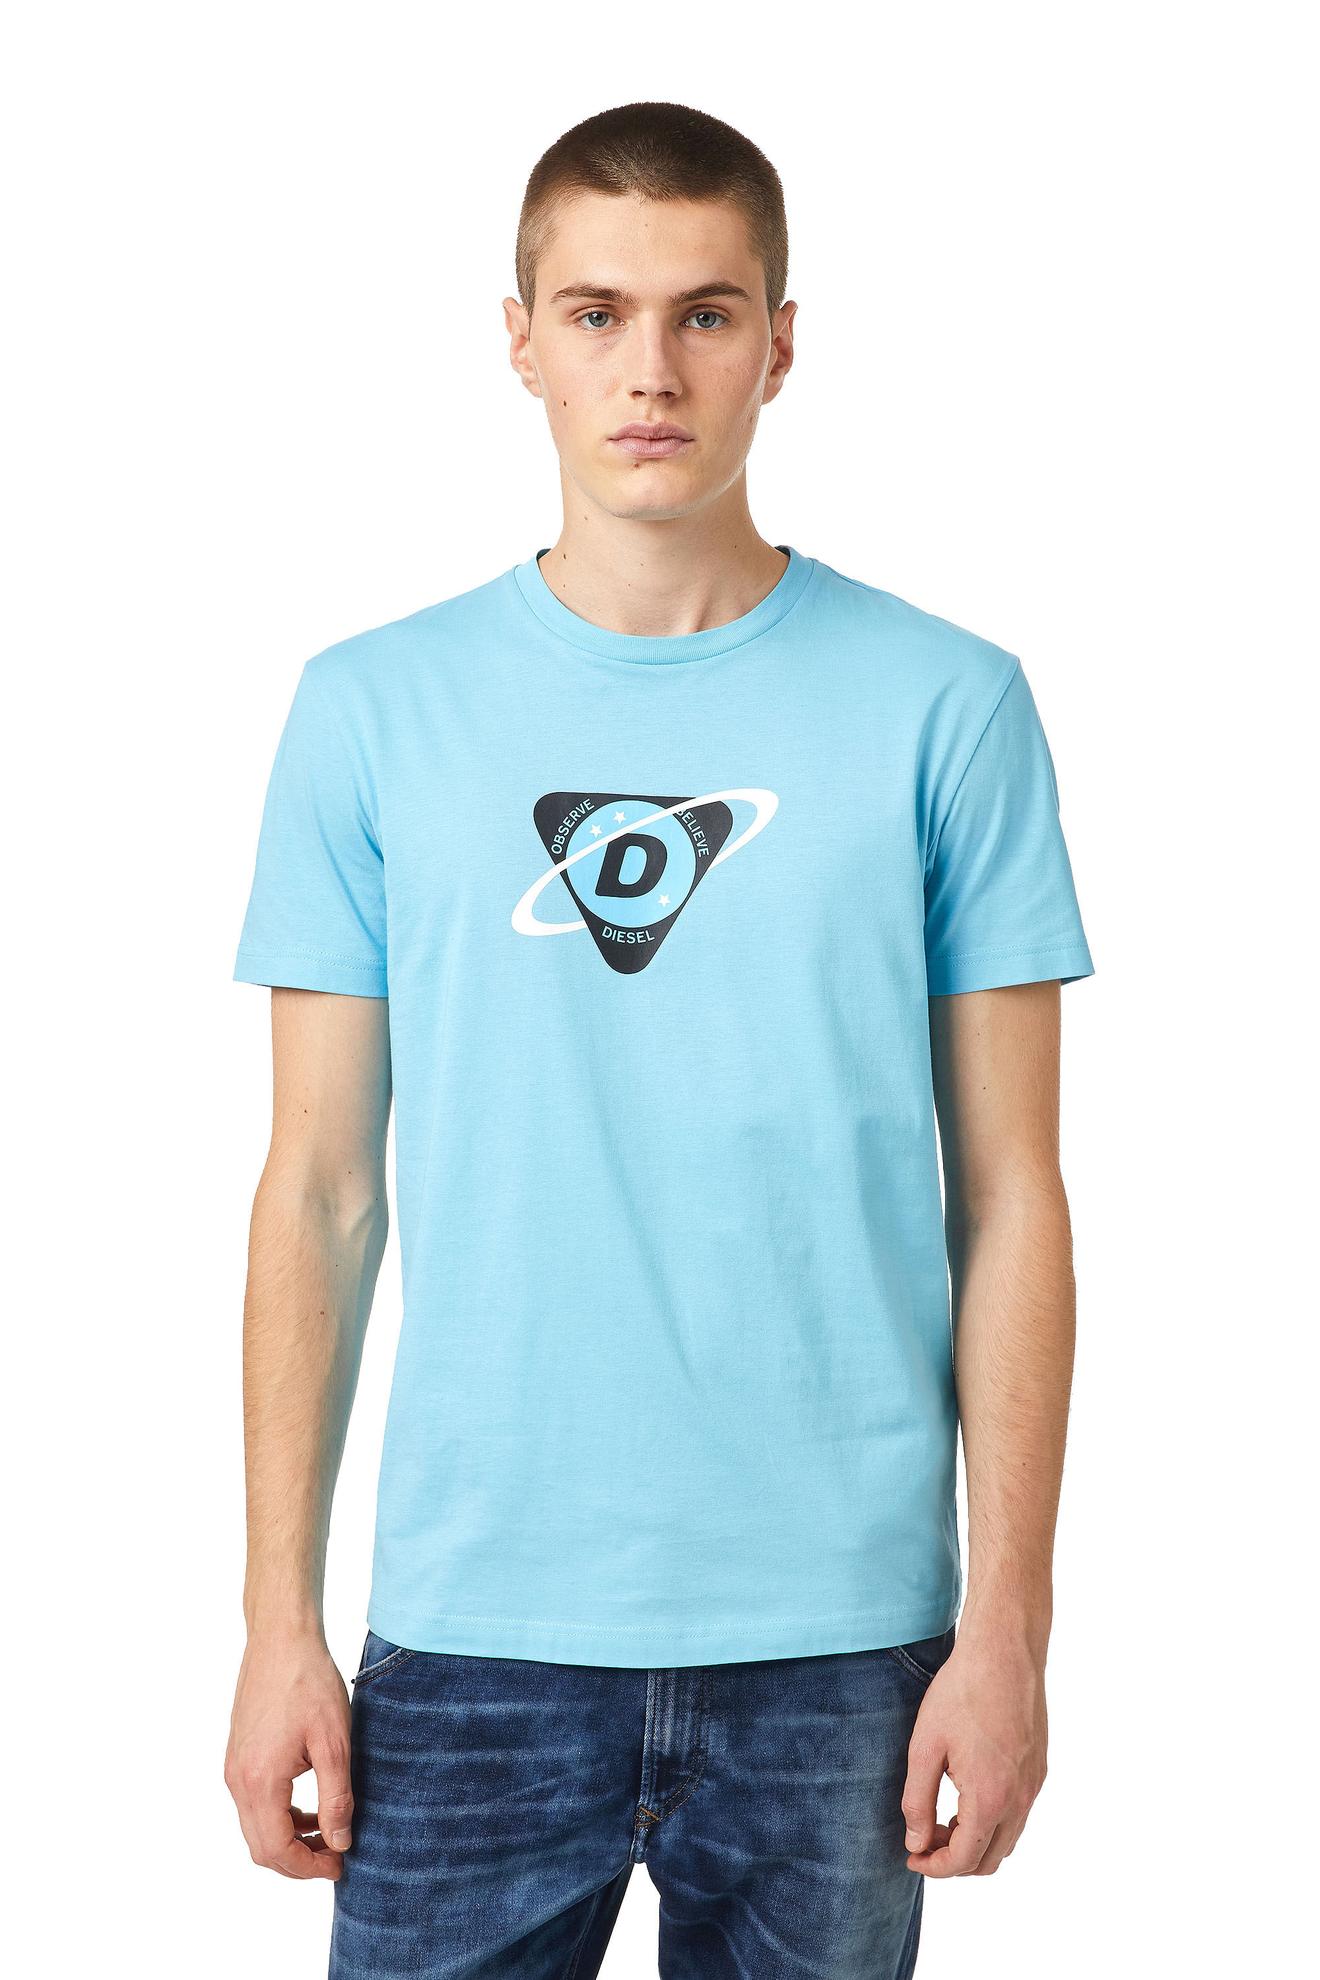 Oferta de Camiseta Para Hombre T Diegos K24 por $188930 en Diesel